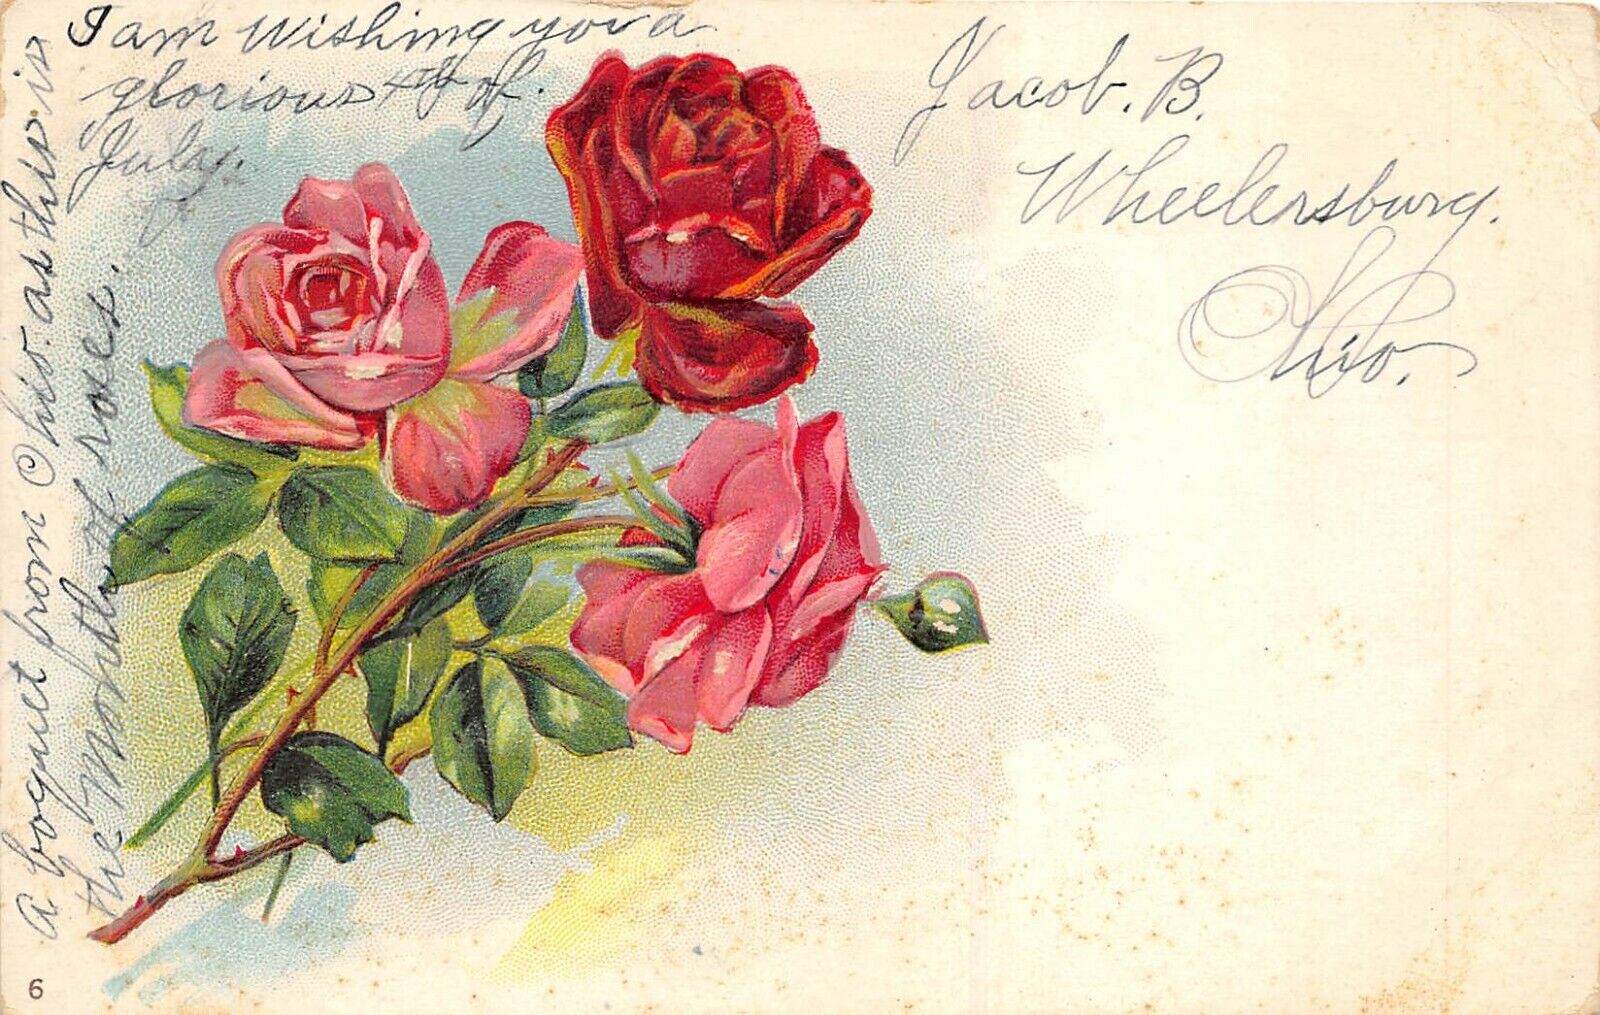 Wheelersburg Ohio 1908 Embossed Greetings Postcard Red Roses